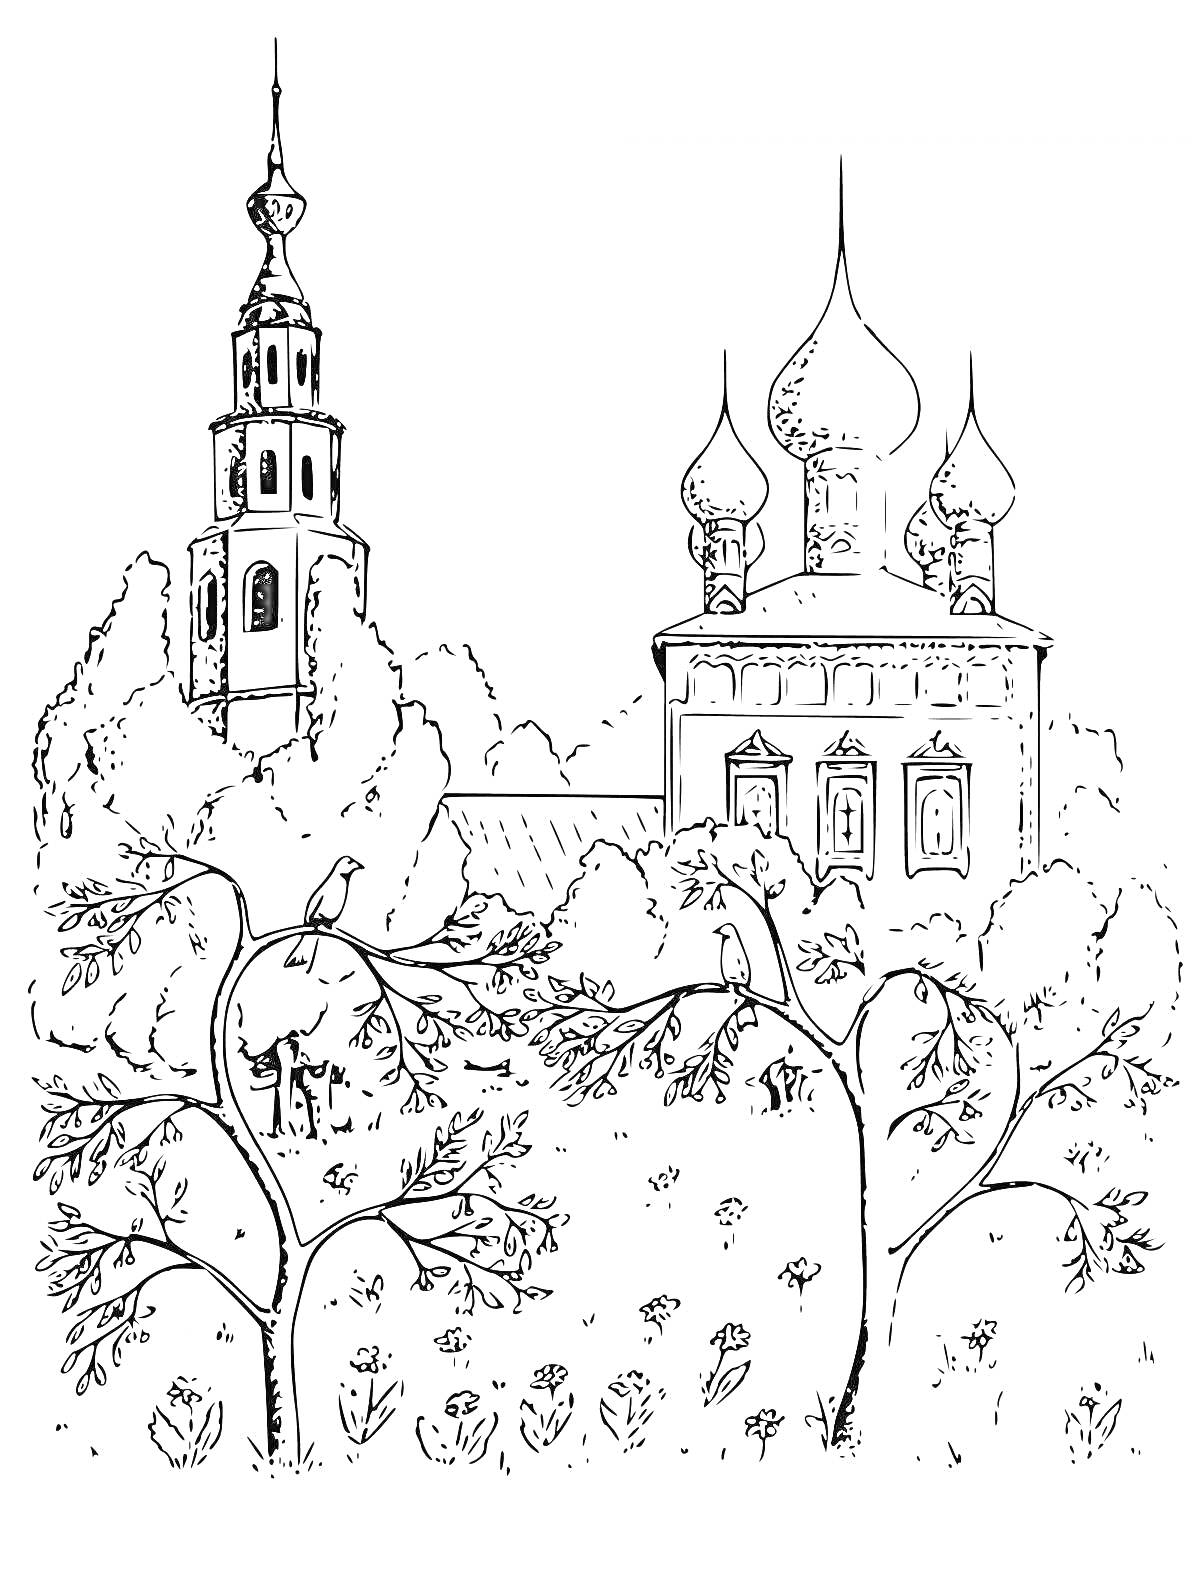 Церковь с куполами, колокольней и деревьями на переднем плане